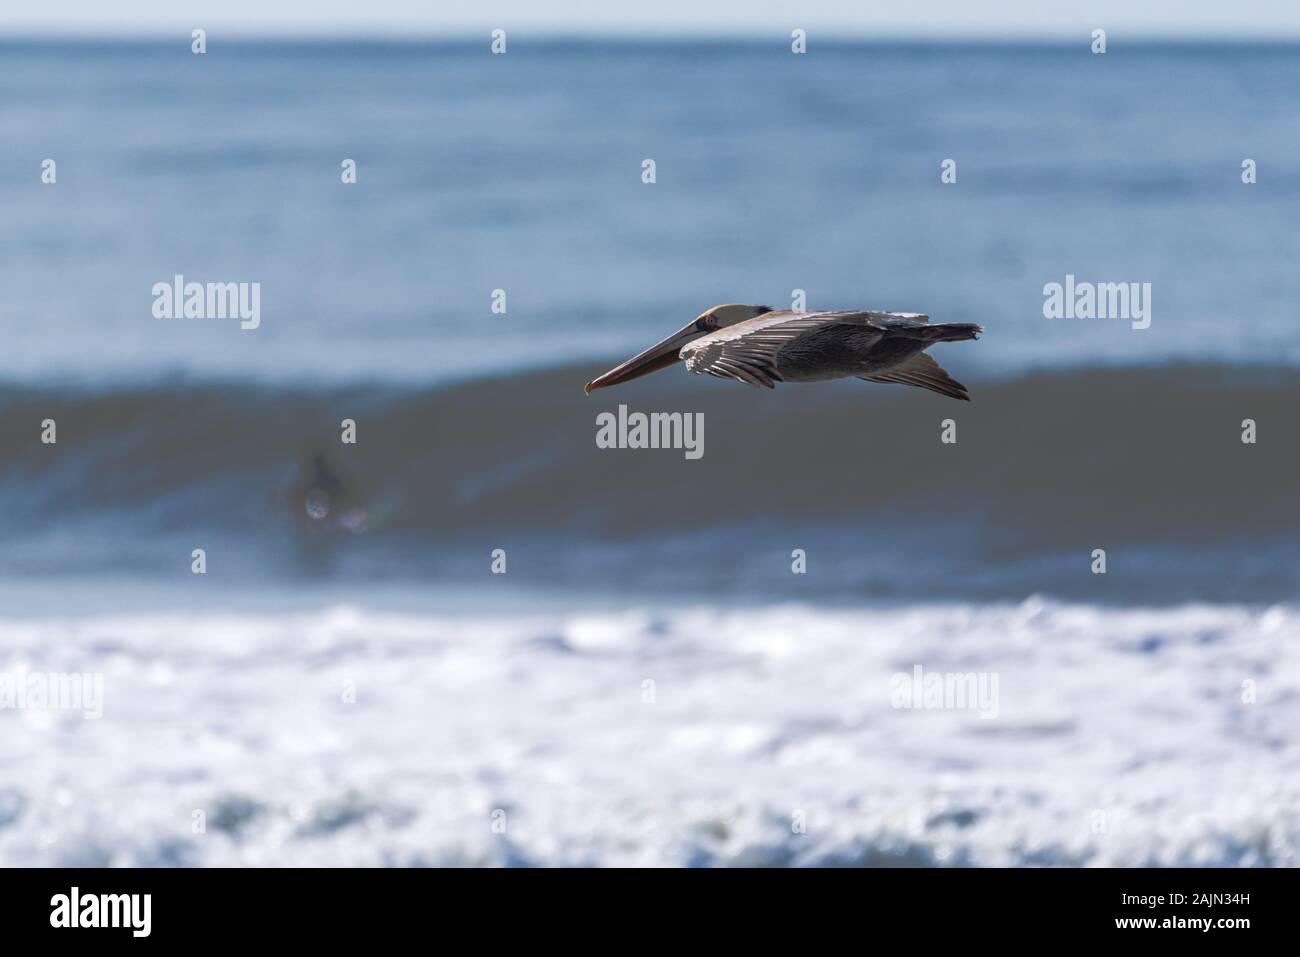 California pellicano bruno ALI ha infilato nella posizione di deltaplano come egli si eleva sopra le onde dell'oceano. Foto Stock